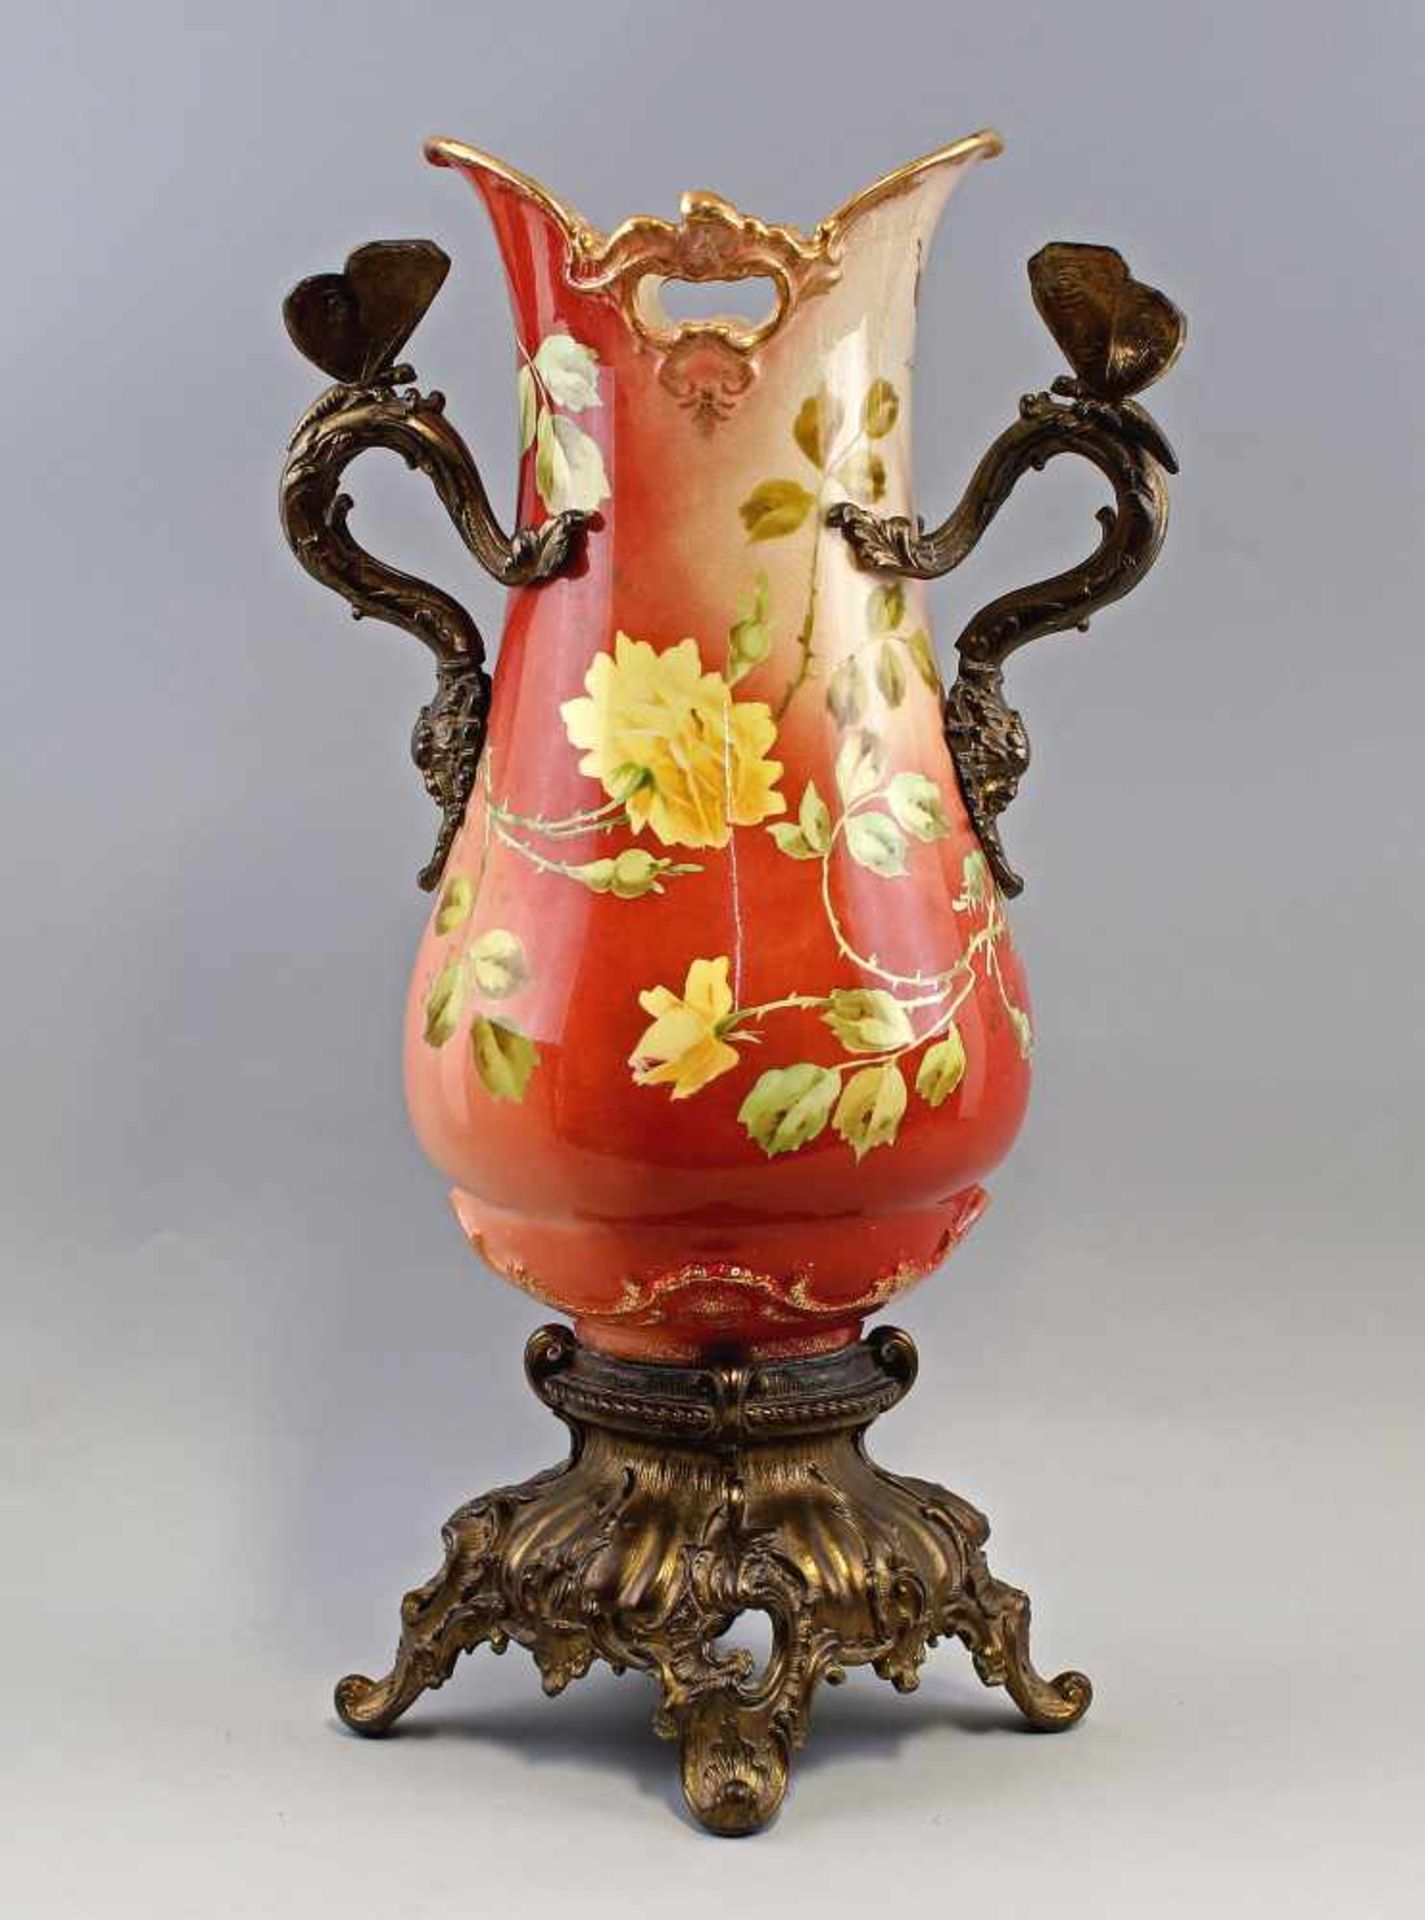 Große Vase mit Metallmontierung Jugendstil.ungemarkt, Schlesien, um 1900, birnenförmige Vase auf